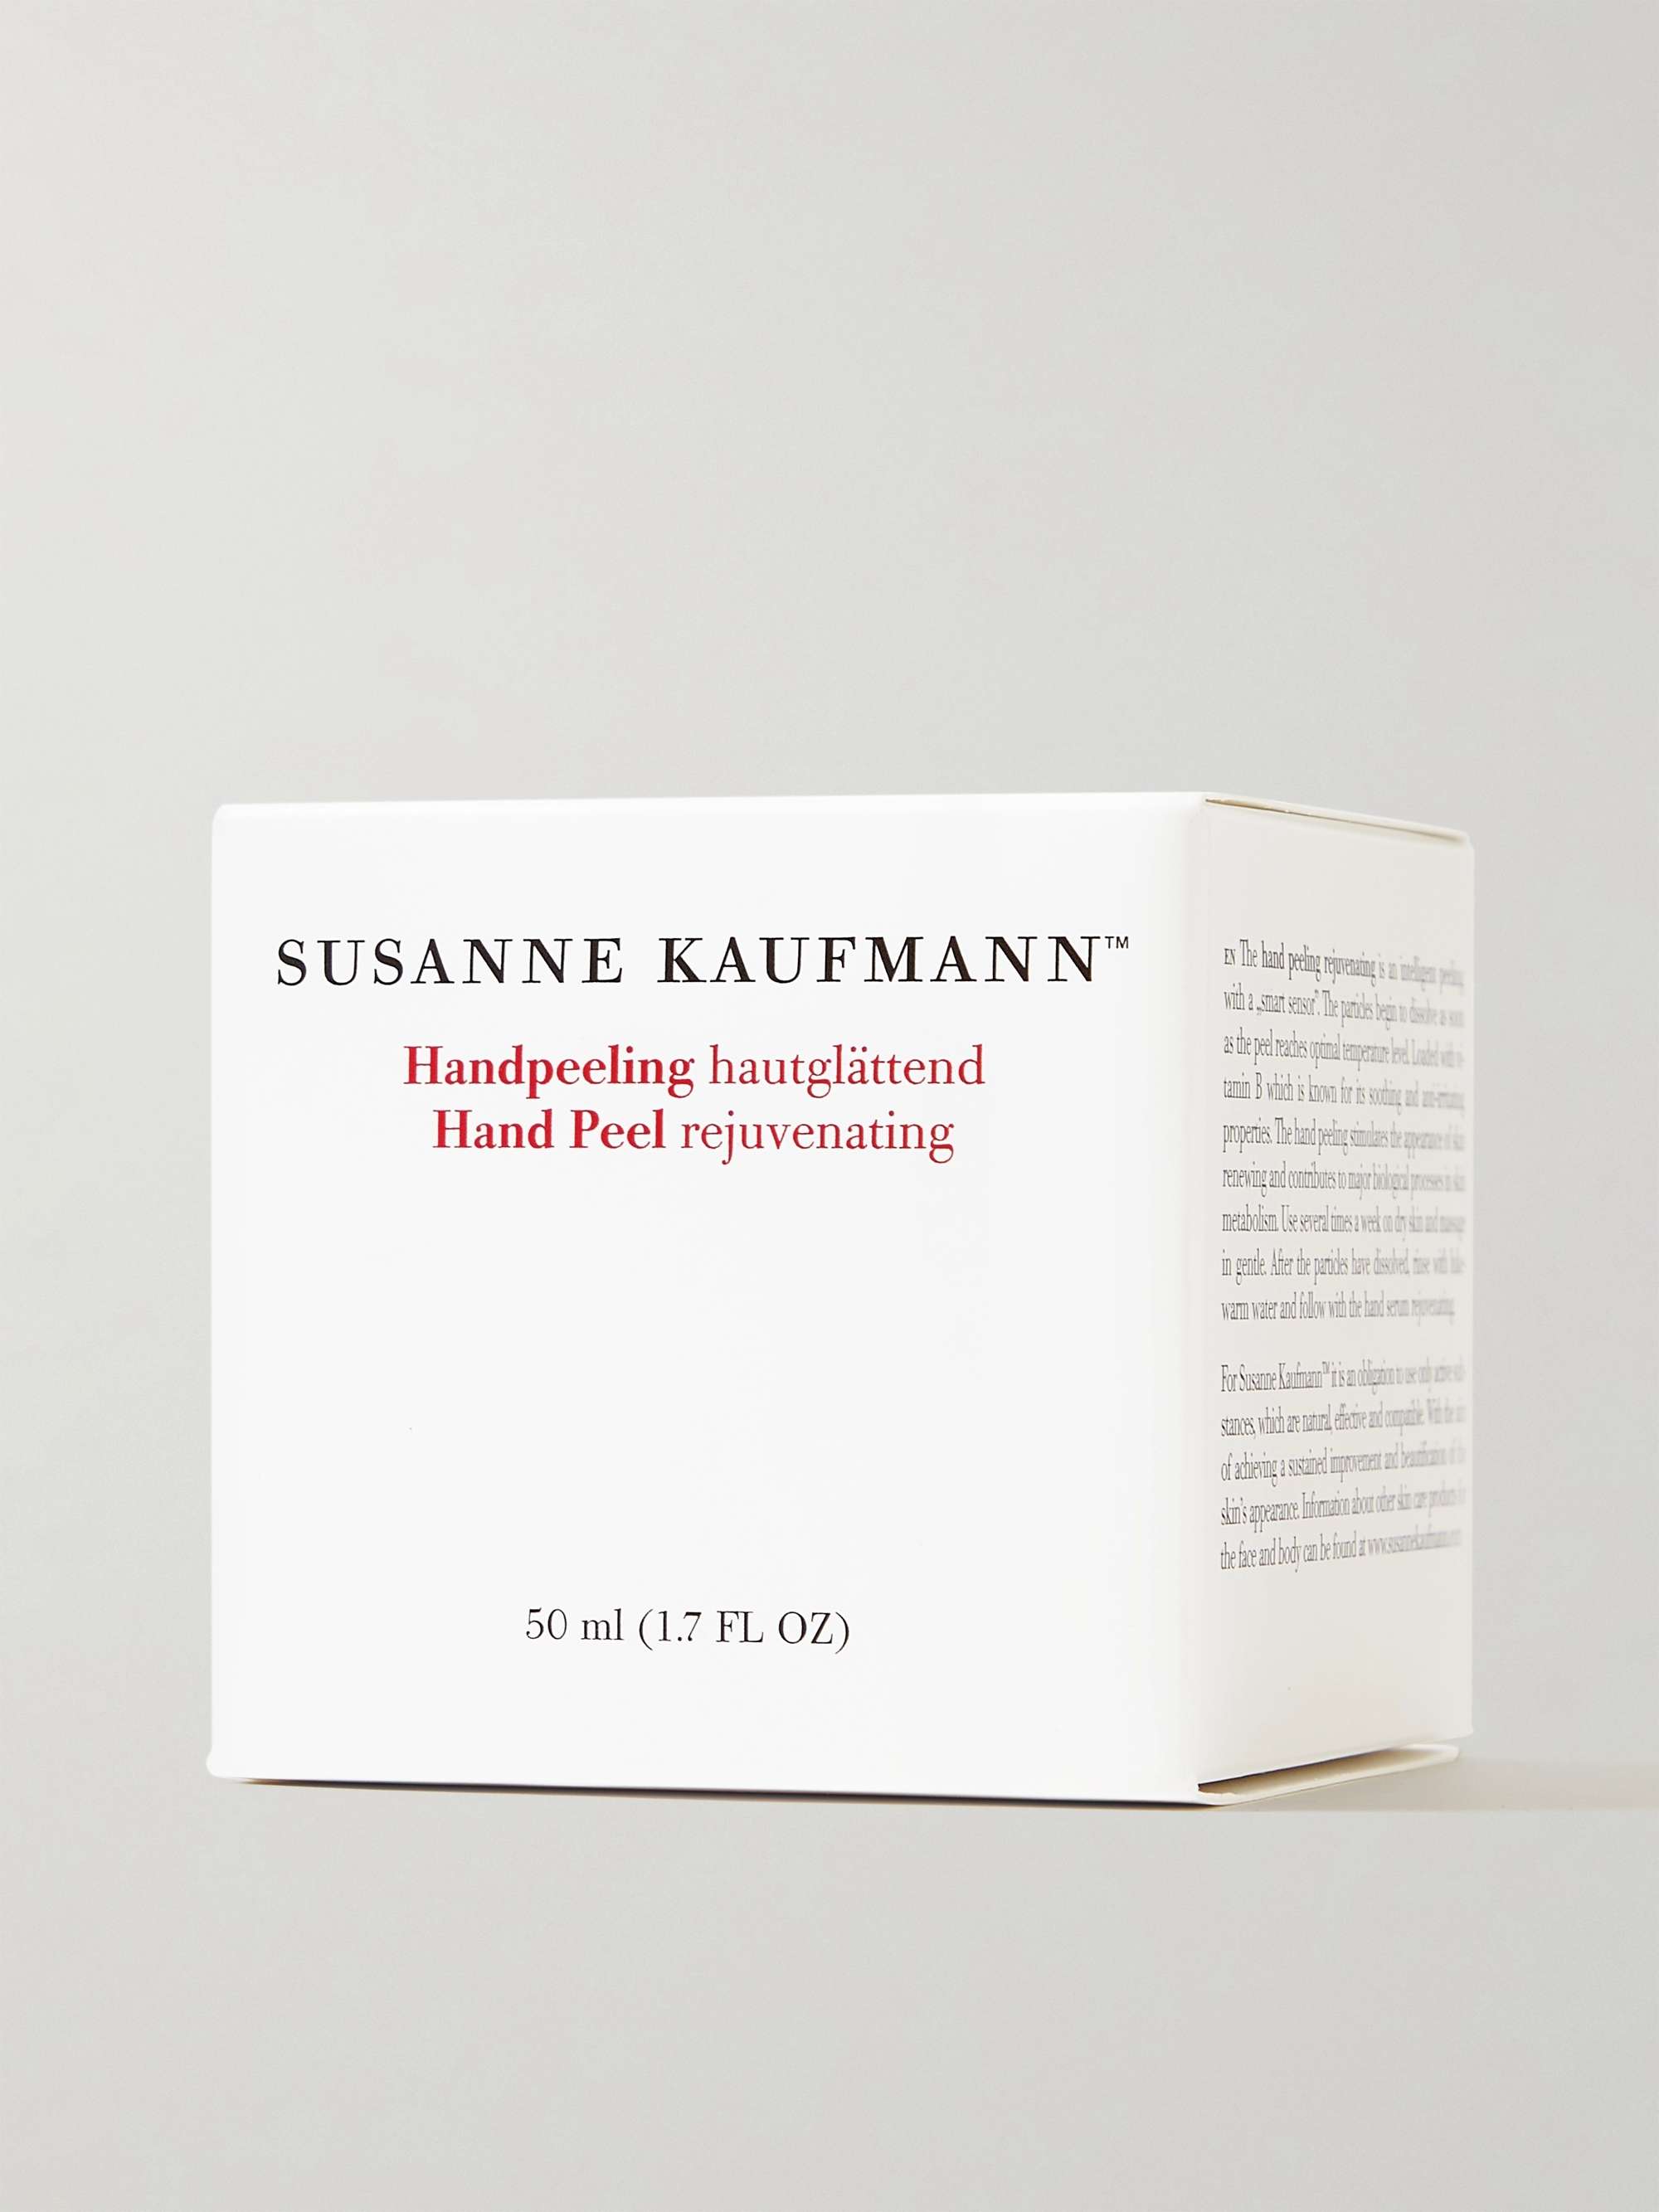 SUSANNE KAUFMANN Hand Peel Rejuvenating, 50ml